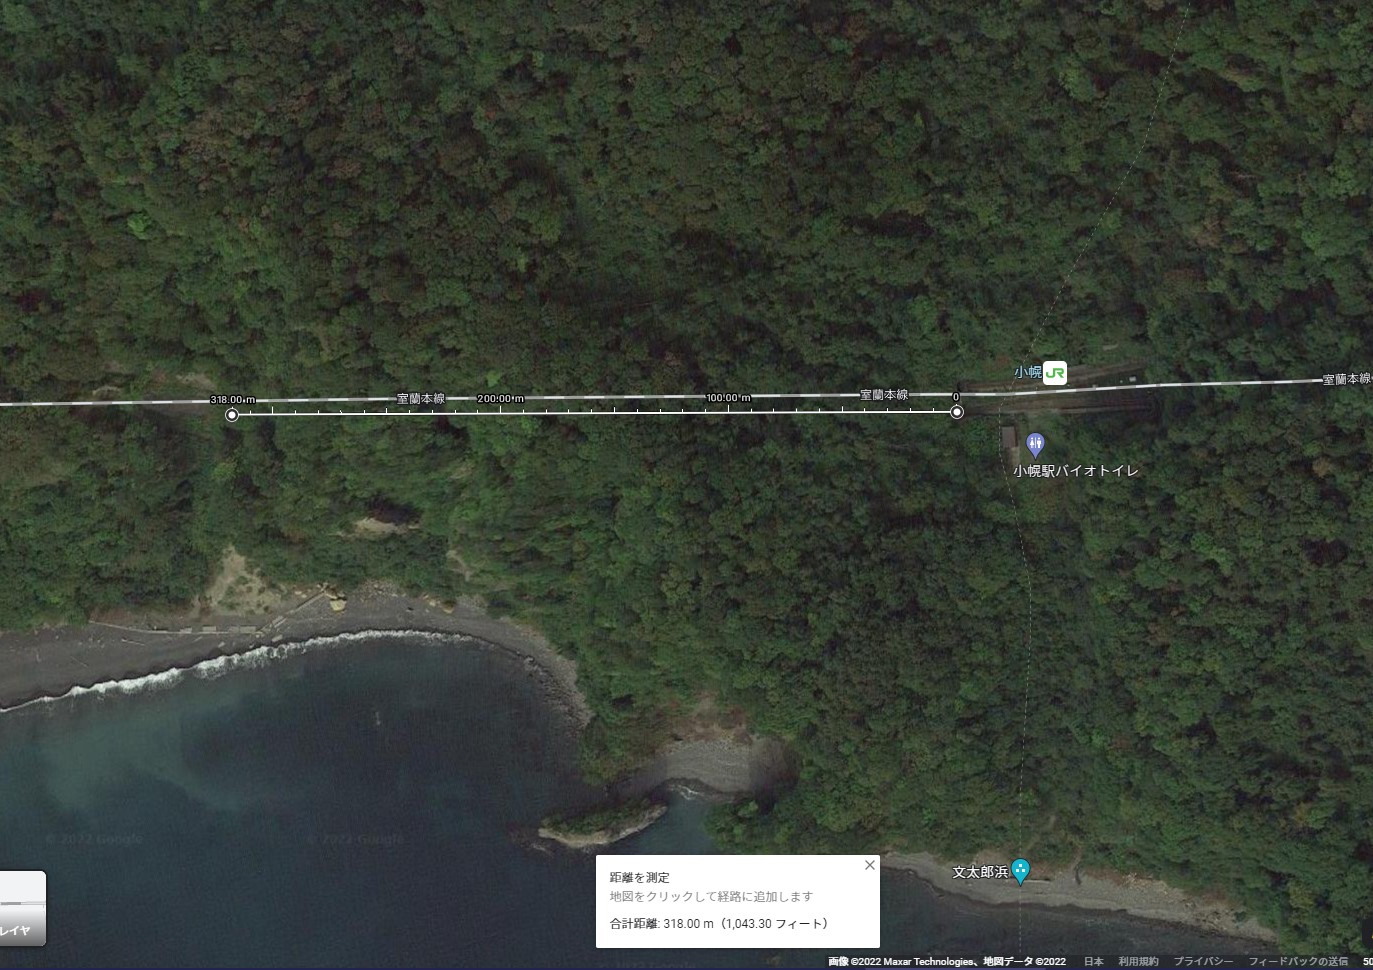  Googleの航空写真で見る幌内トンネル 